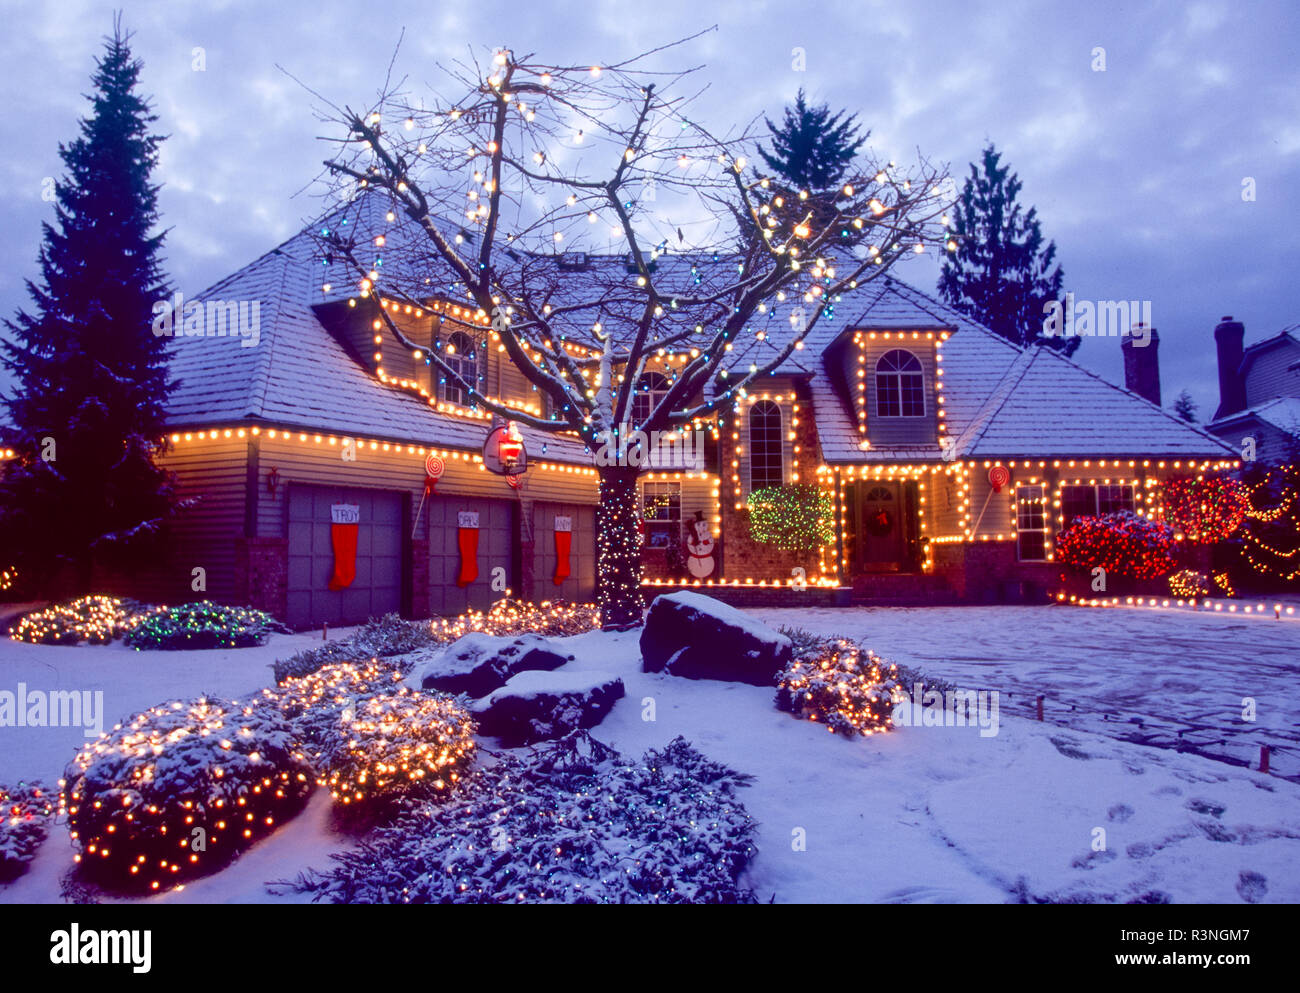 Home lit with Christmas lights. Stock Photo